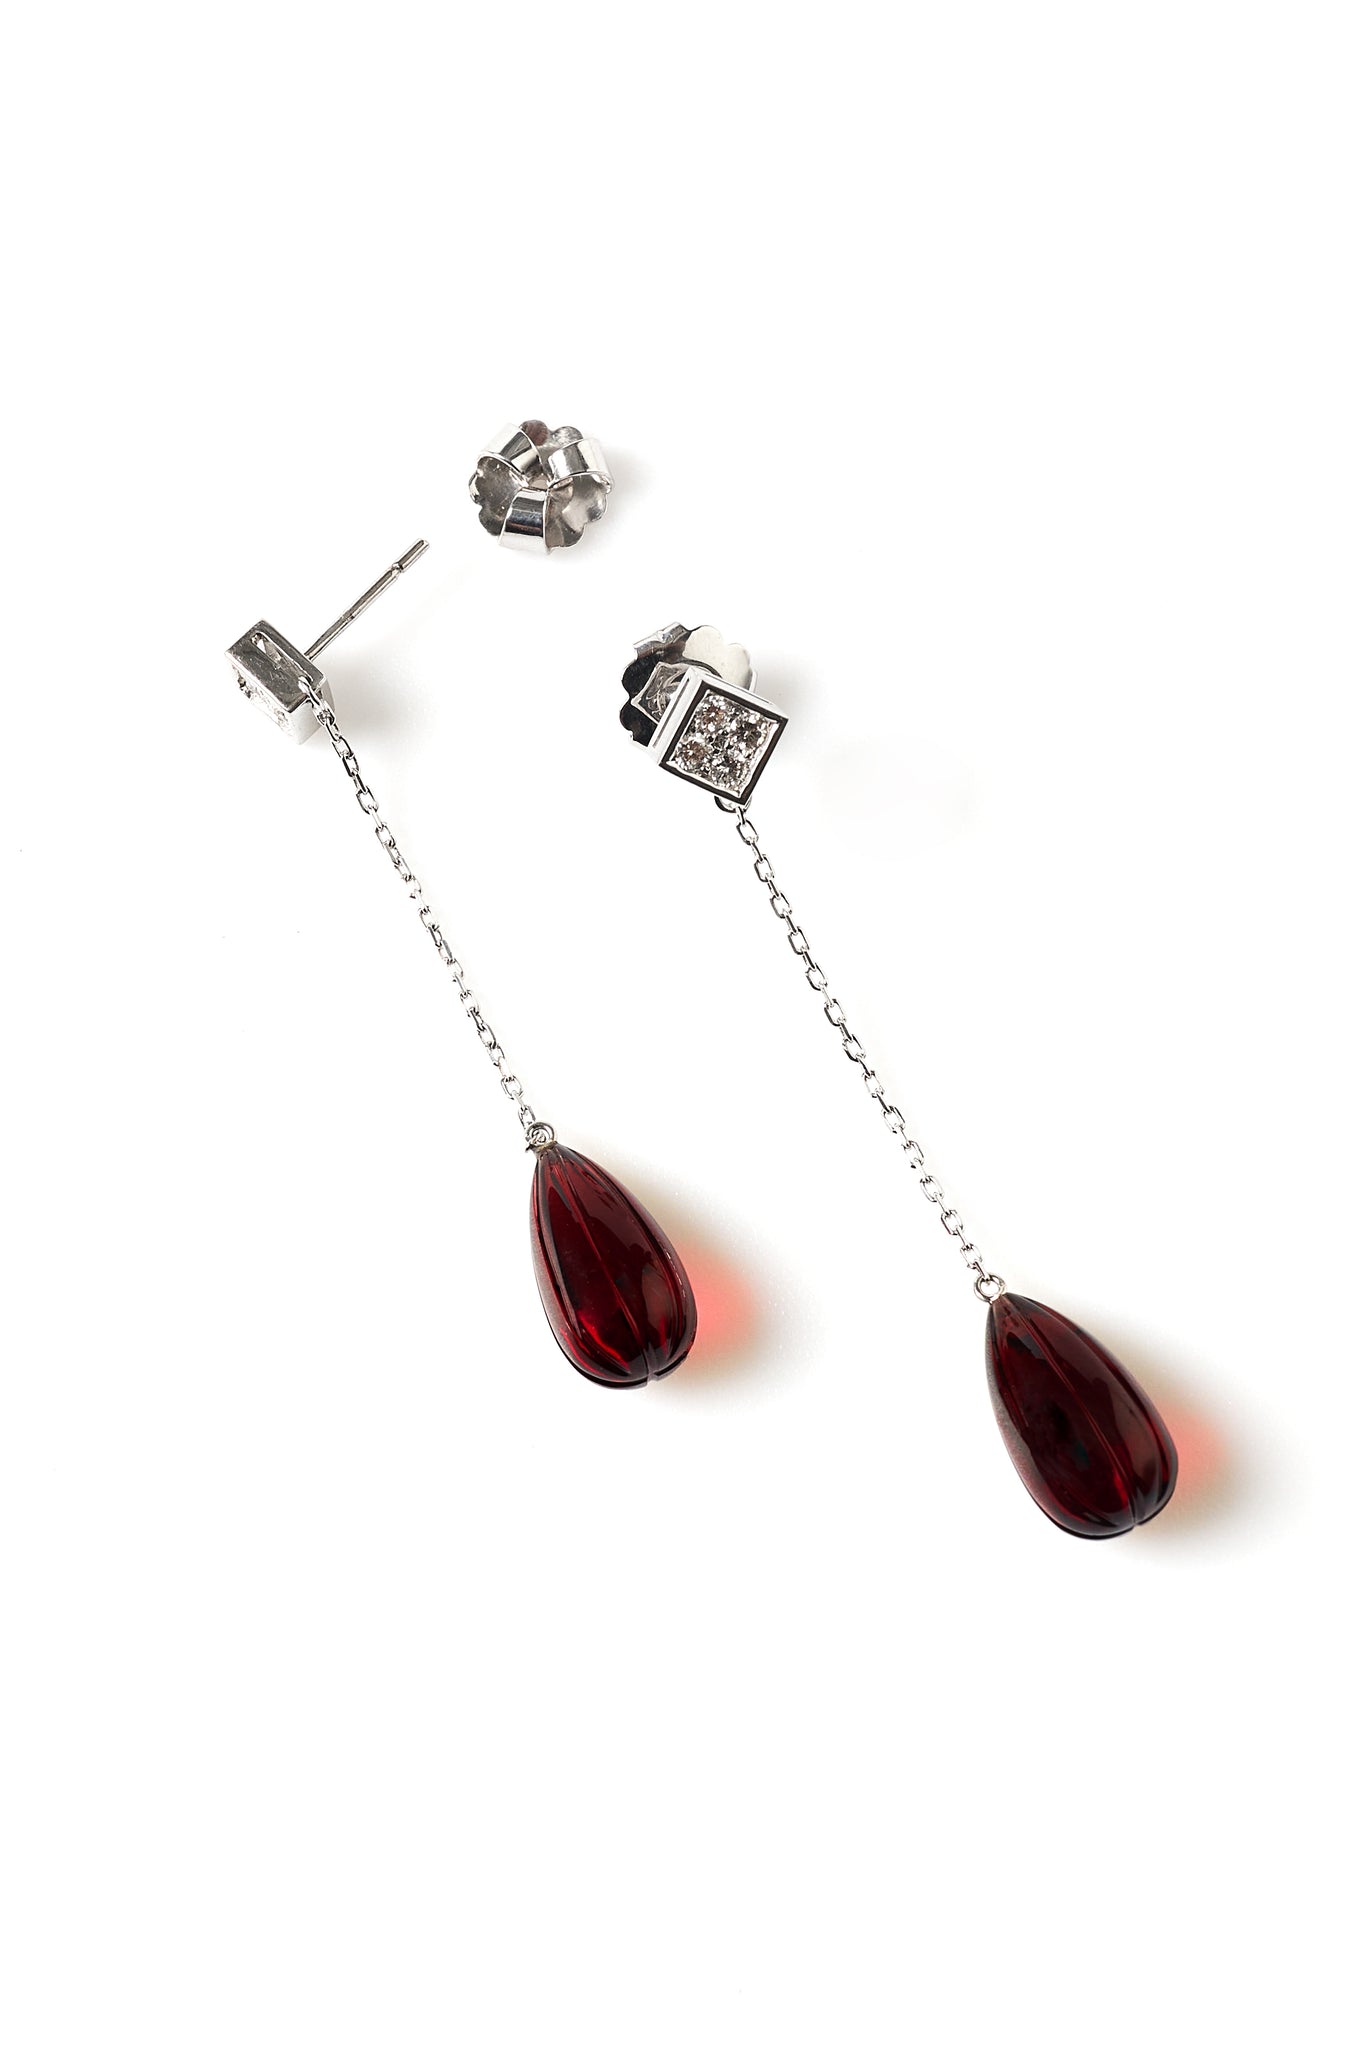 Exotic Garnet earrings